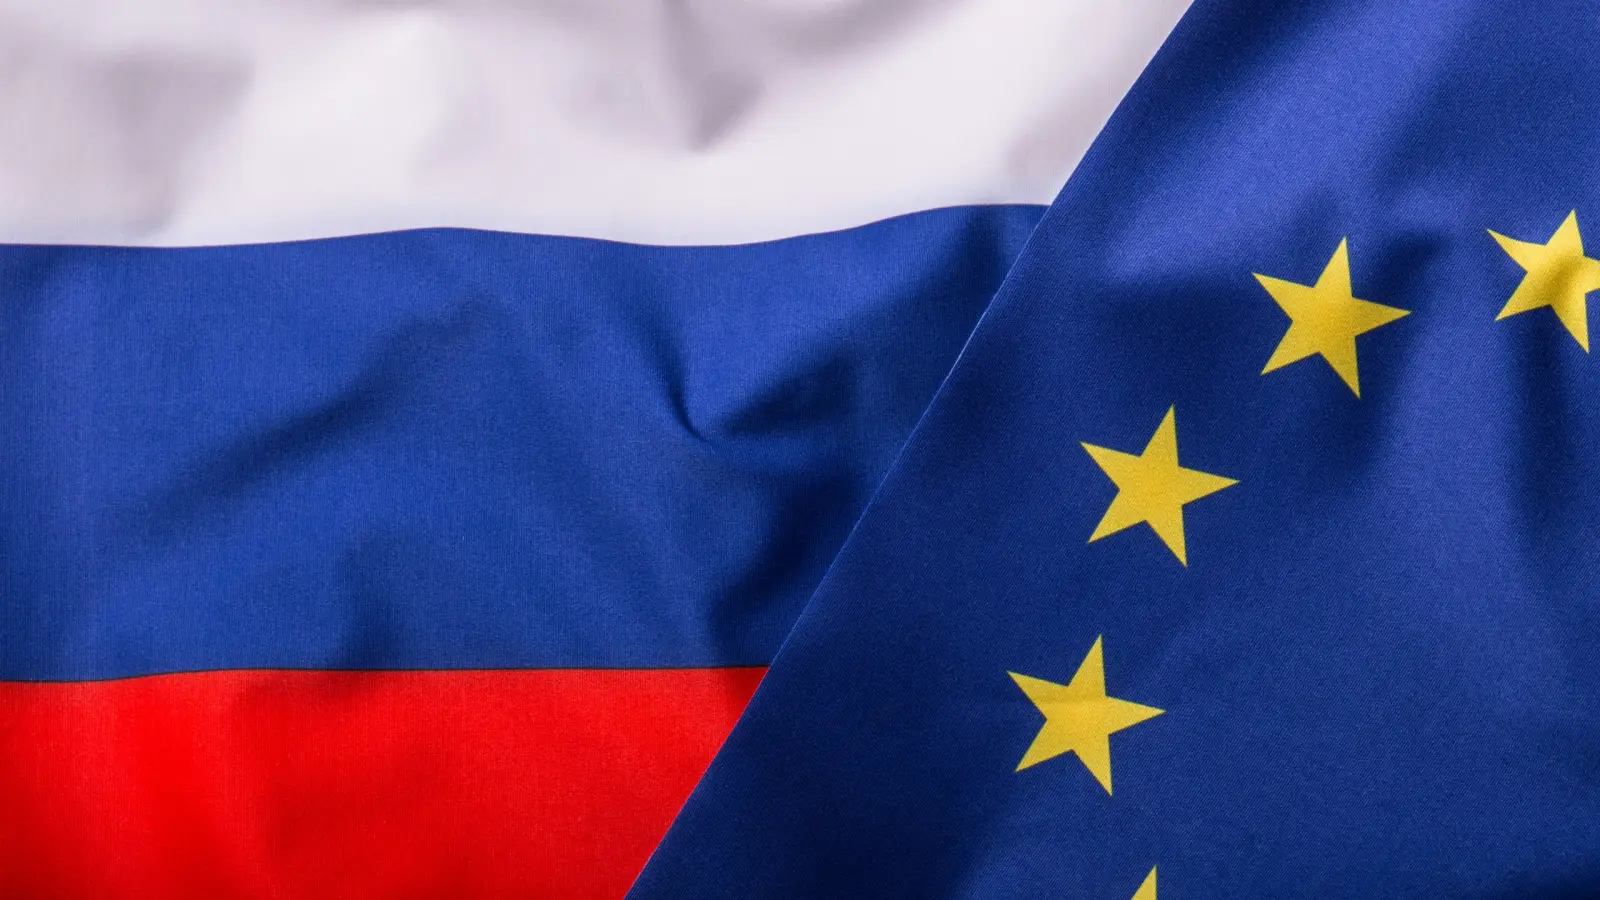 Uniunea Europeana a Luat o Decizie Radicala care are Impact Major Asupra Rusiei